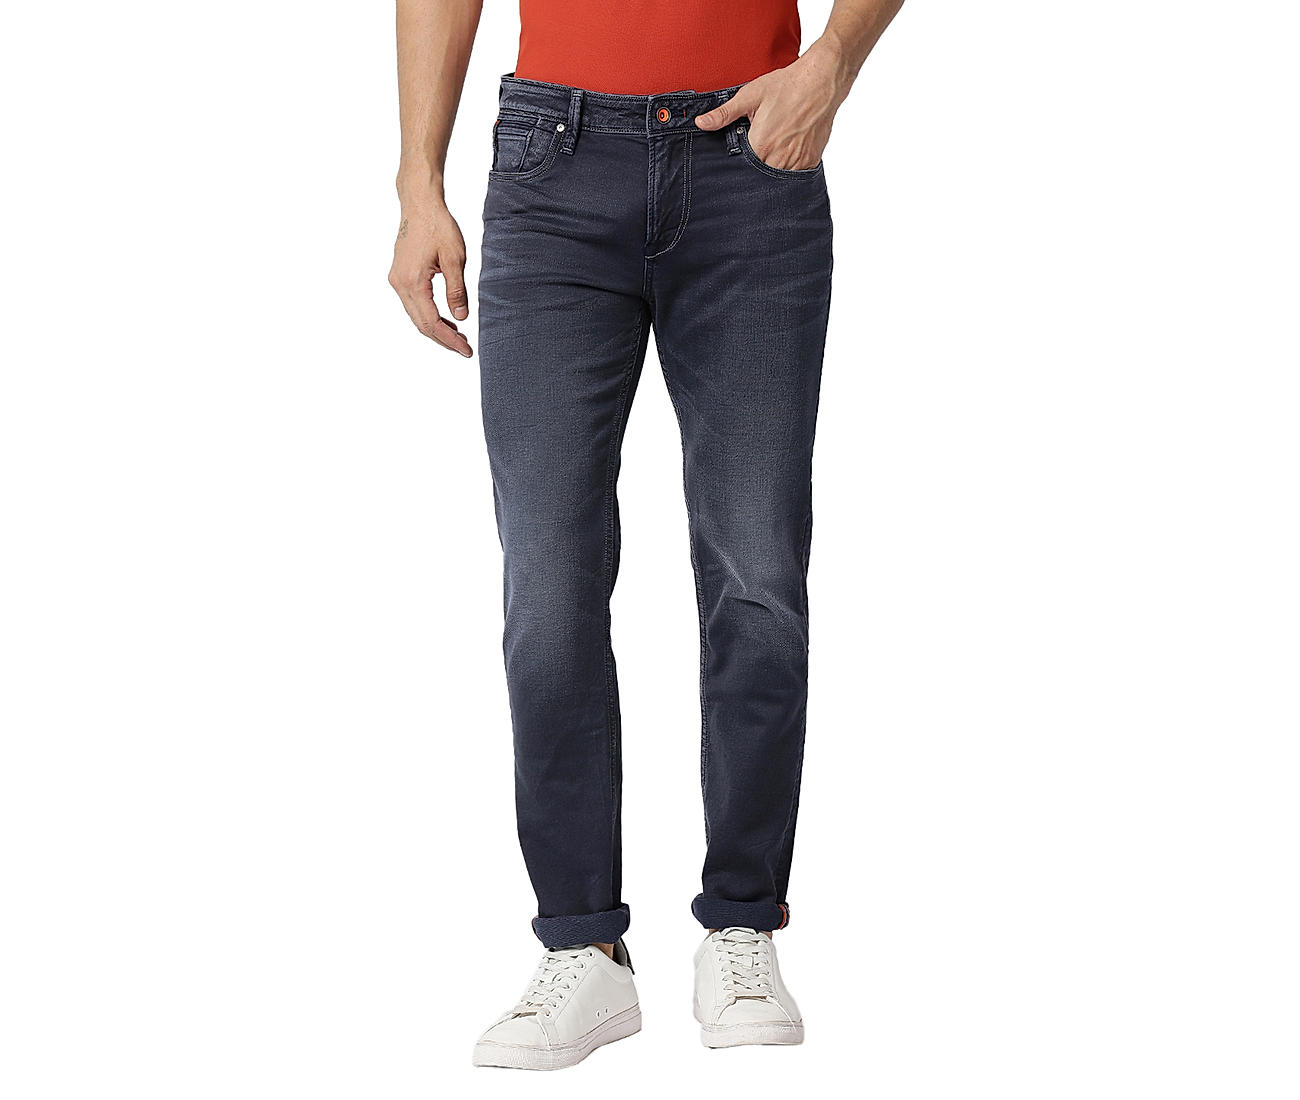 Buy Dark Grey Solid Slim Fit Jeans for Men Online at Killer Jeans | 510171